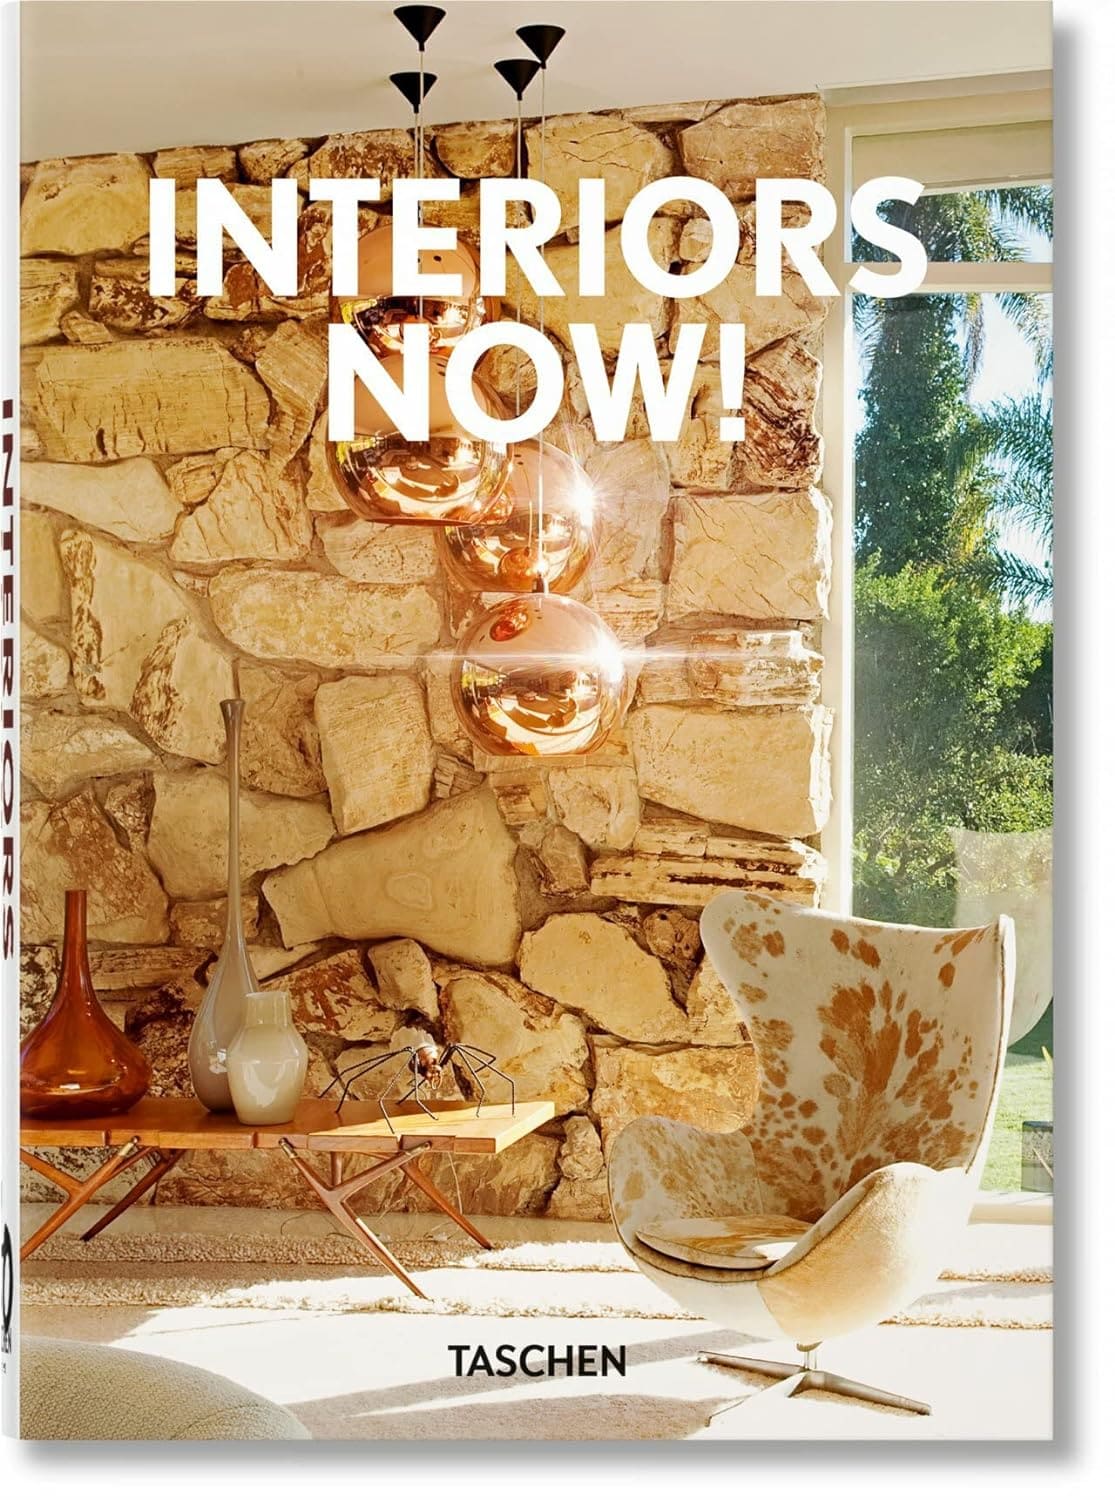 Interiors Now! libro de diseño de interiores bonito de tachen